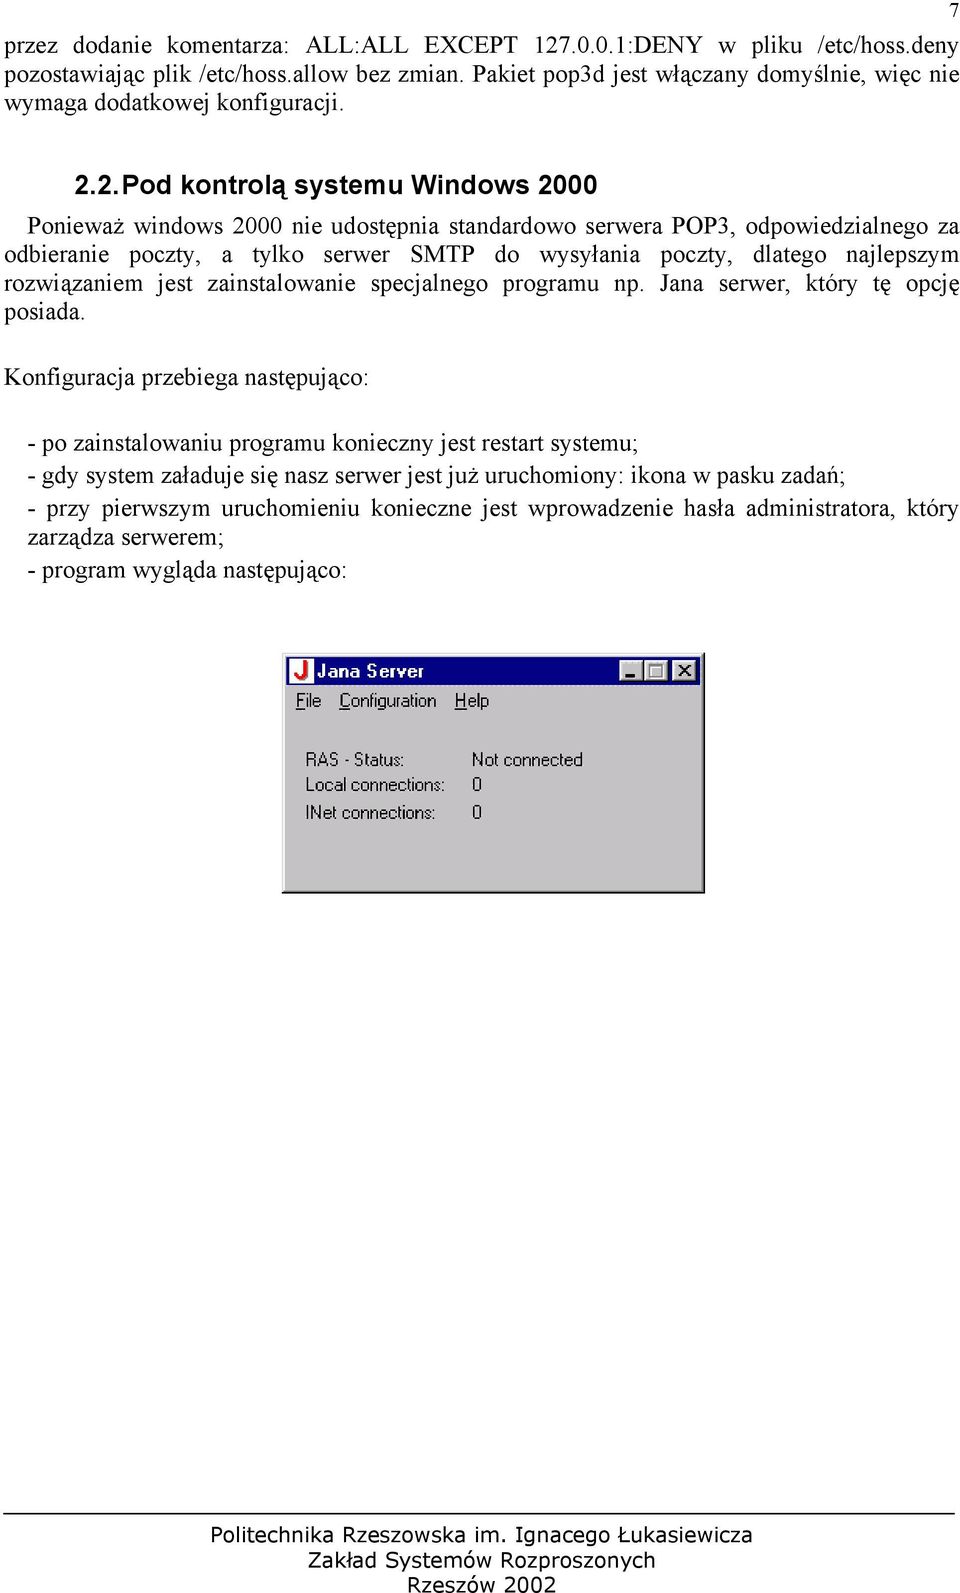 2. Pod kontrolą systemu Windows 2000 Ponieważ windows 2000 nie udostępnia standardowo serwera POP3, odpowiedzialnego za odbieranie poczty, a tylko serwer SMTP do wysyłania poczty, dlatego najlepszym